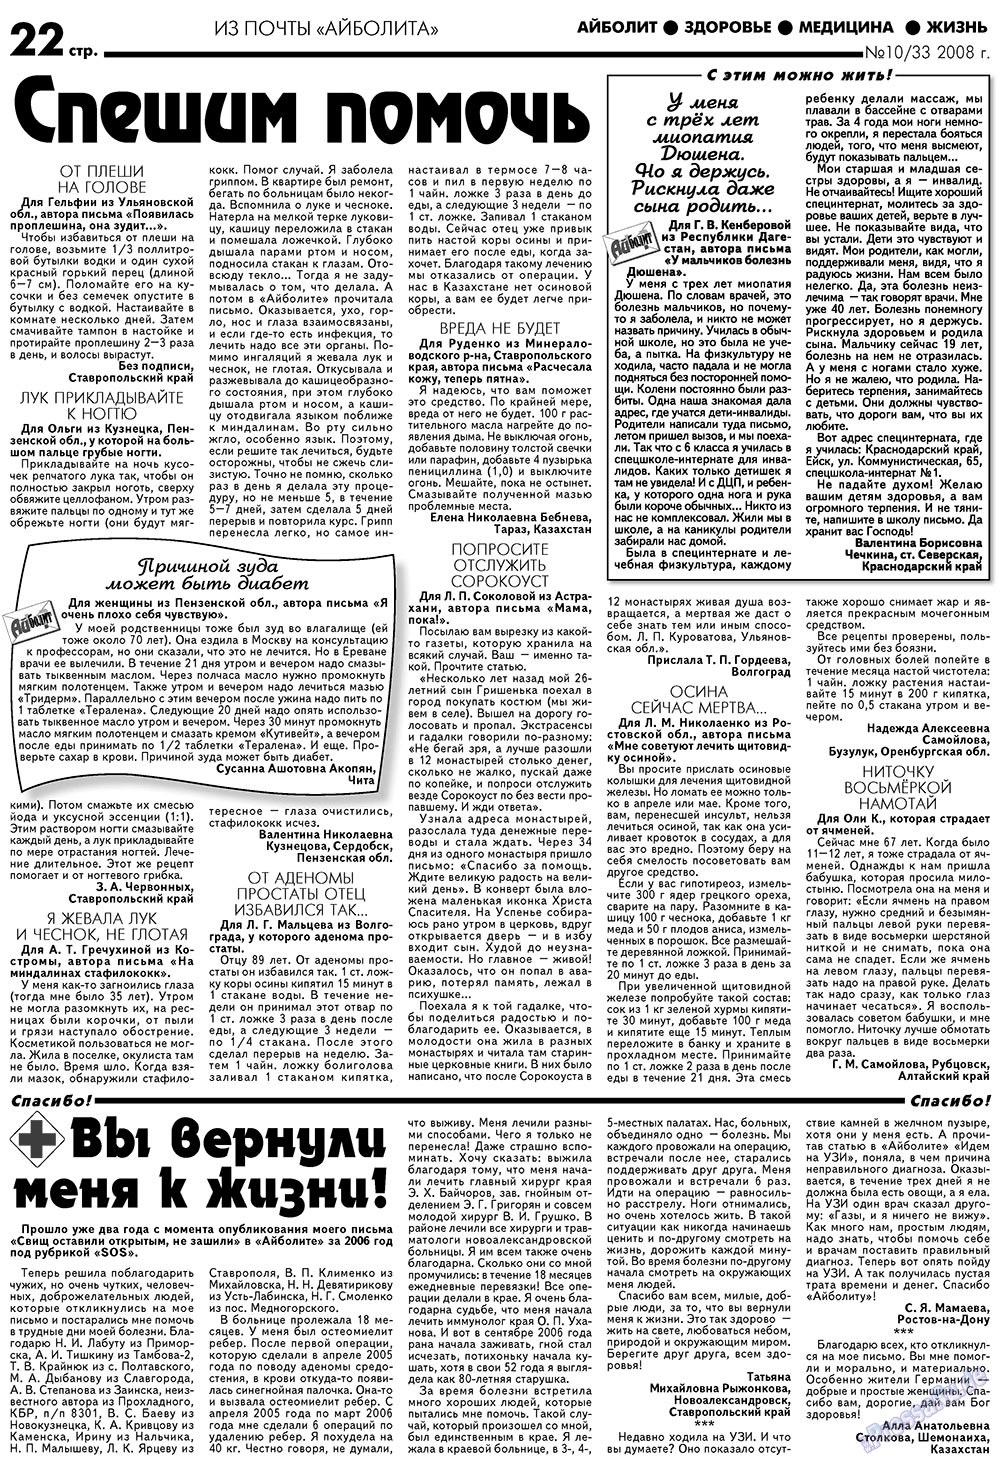 Aibolit (Zeitung). 2008 Jahr, Ausgabe 10, Seite 22